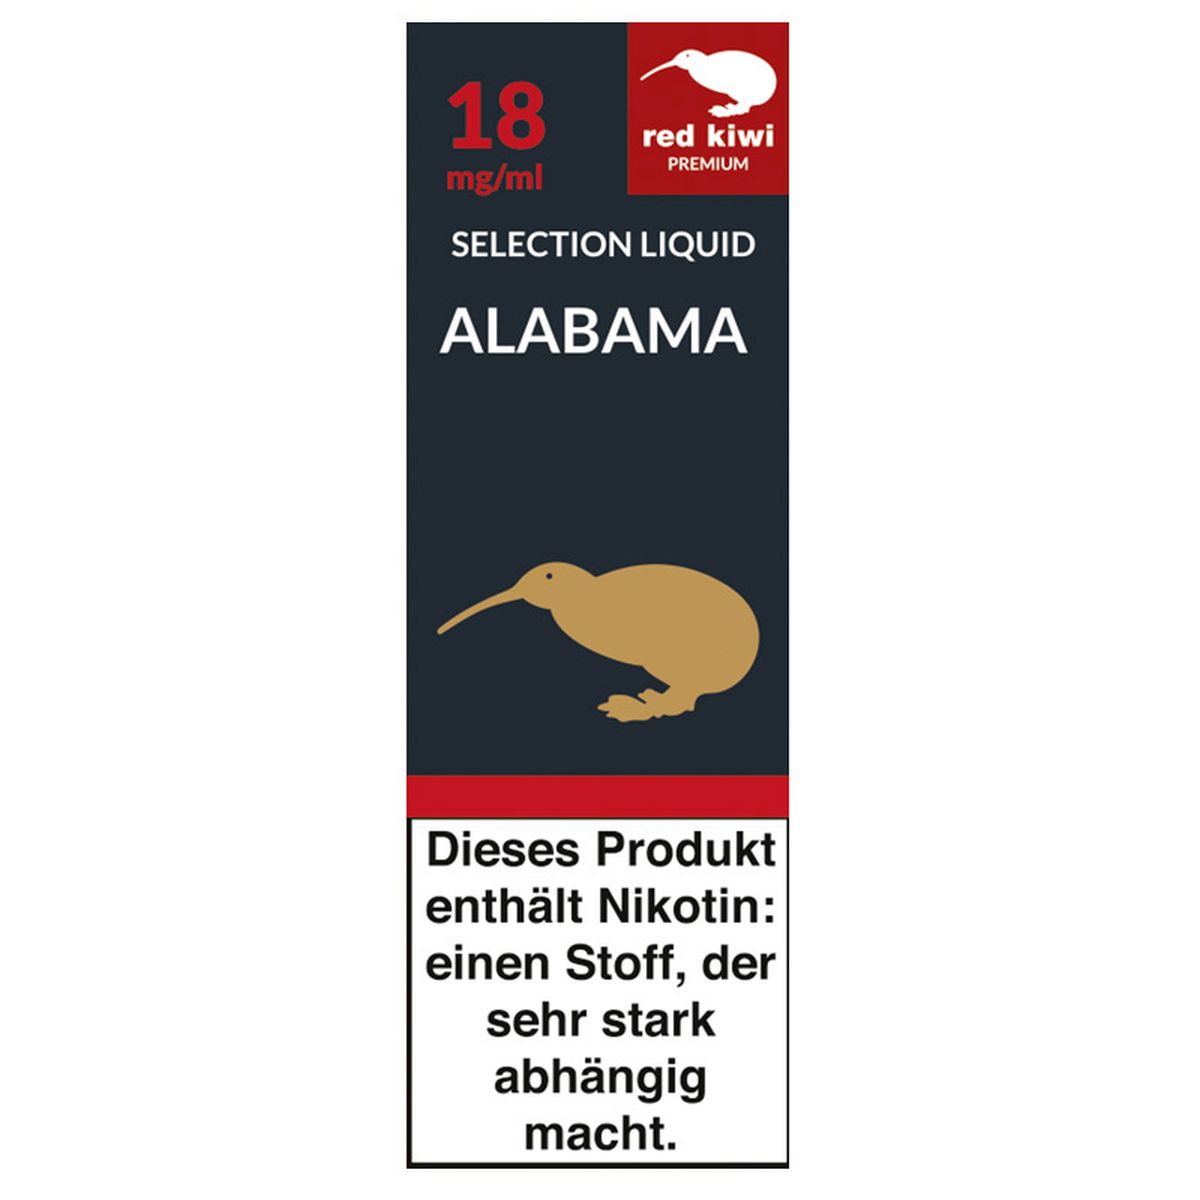 Red Kiwi Red Kiwi eLiquid Selection Alabama 18mg Nikotin/ml bei www.Tabakring.de kaufen